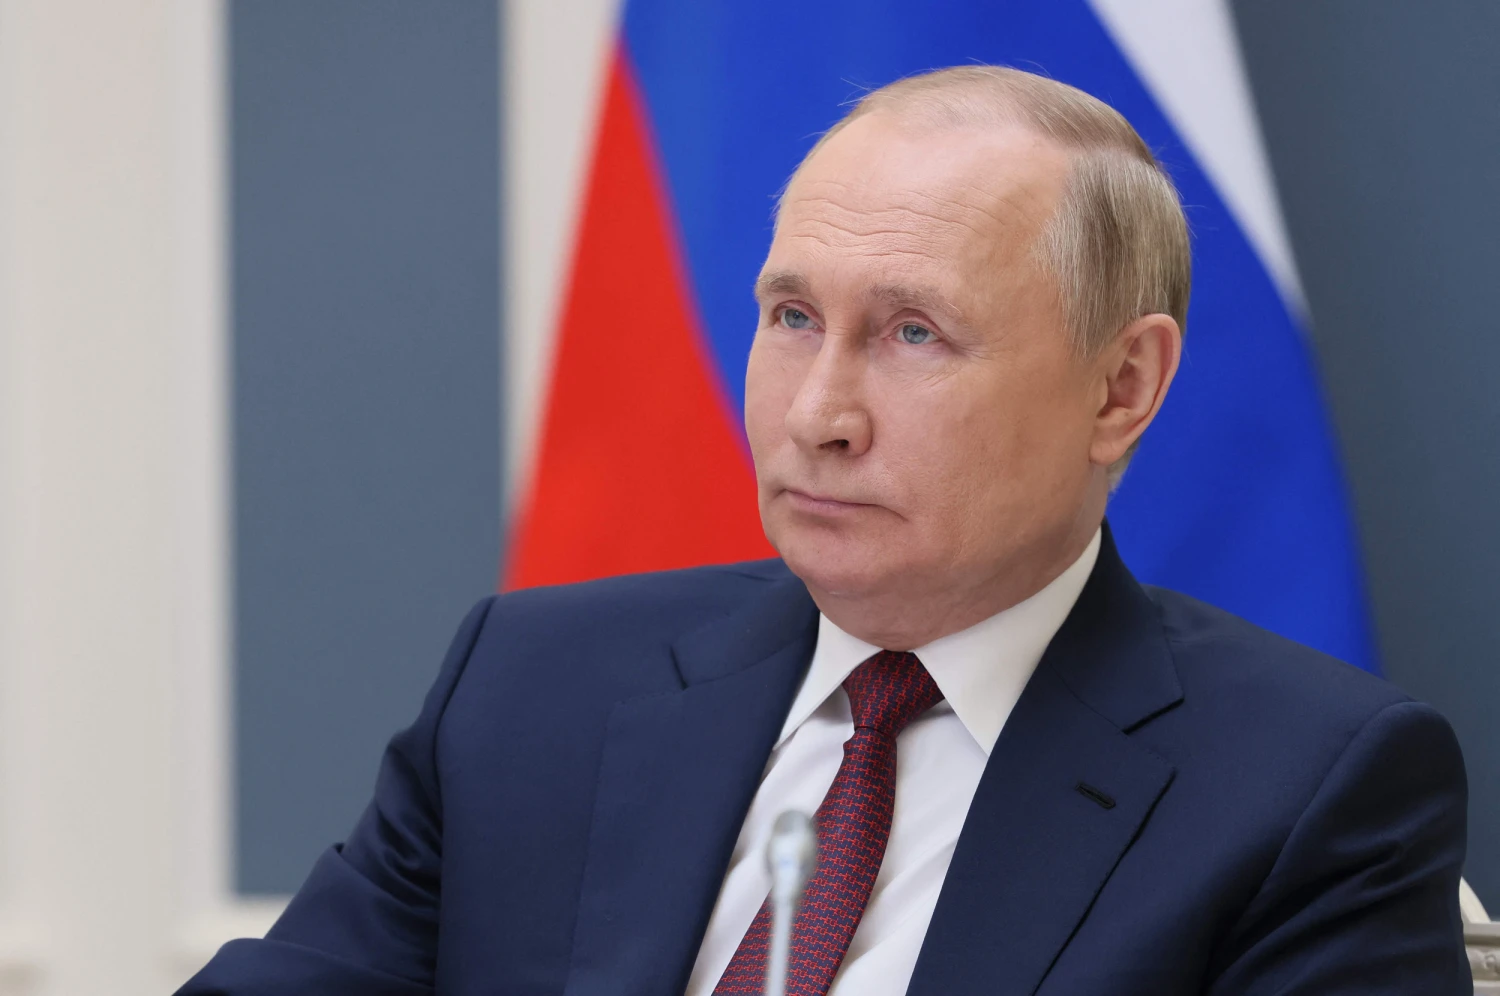 Β.Πούτιν: «Η Ρωσία αναμένει ειρηνική διευθέτηση στο Ναγκόρνο Καραμπάχ»